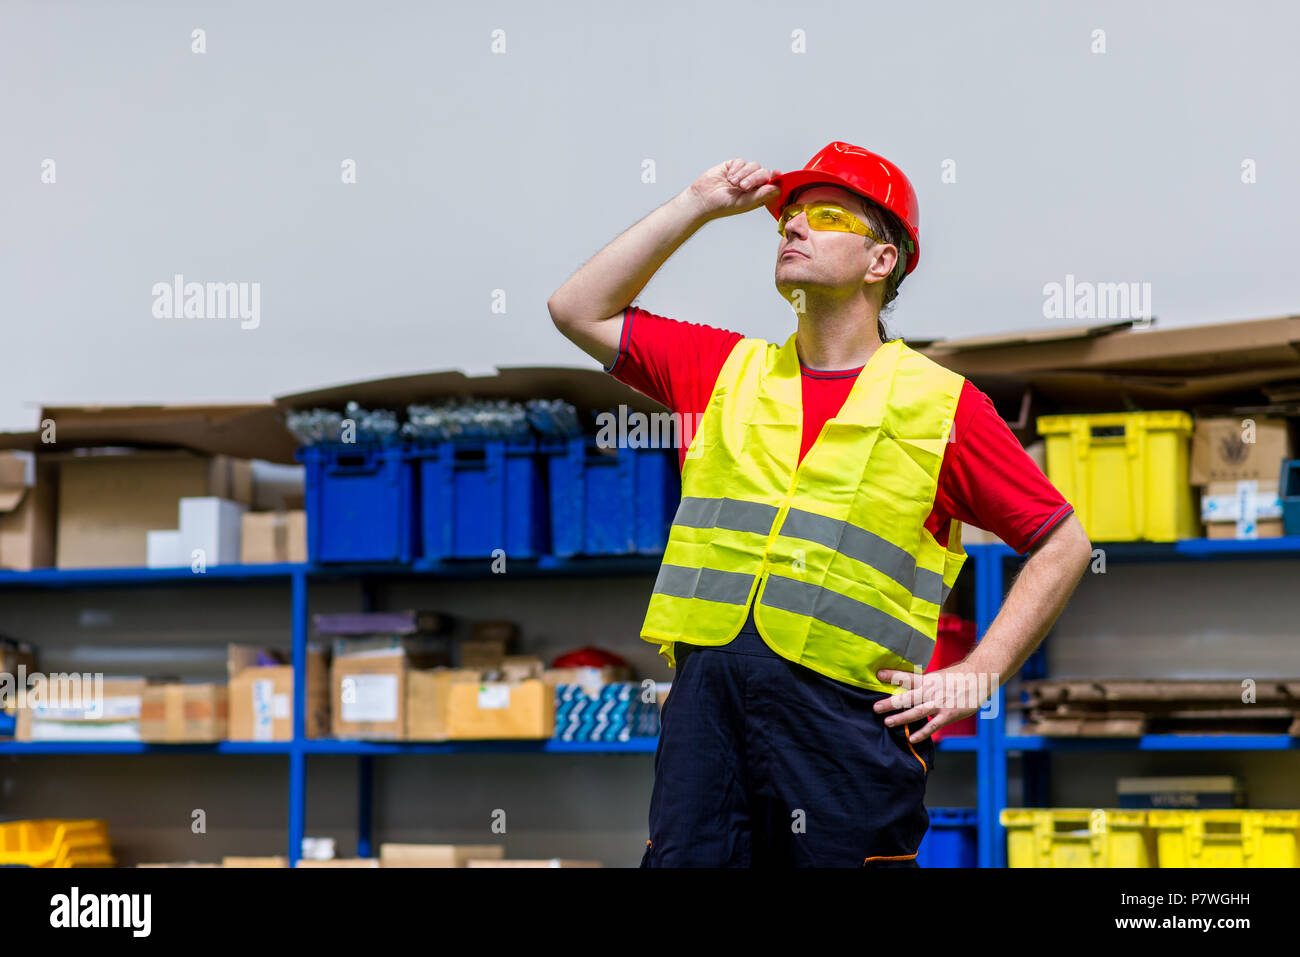 Arbeiter tragen gelbe reflektierende Westen, gelb Schutzbrille und Roten Helm. Arbeiter, die mit einer Hand auf seinem Helm Stockfoto